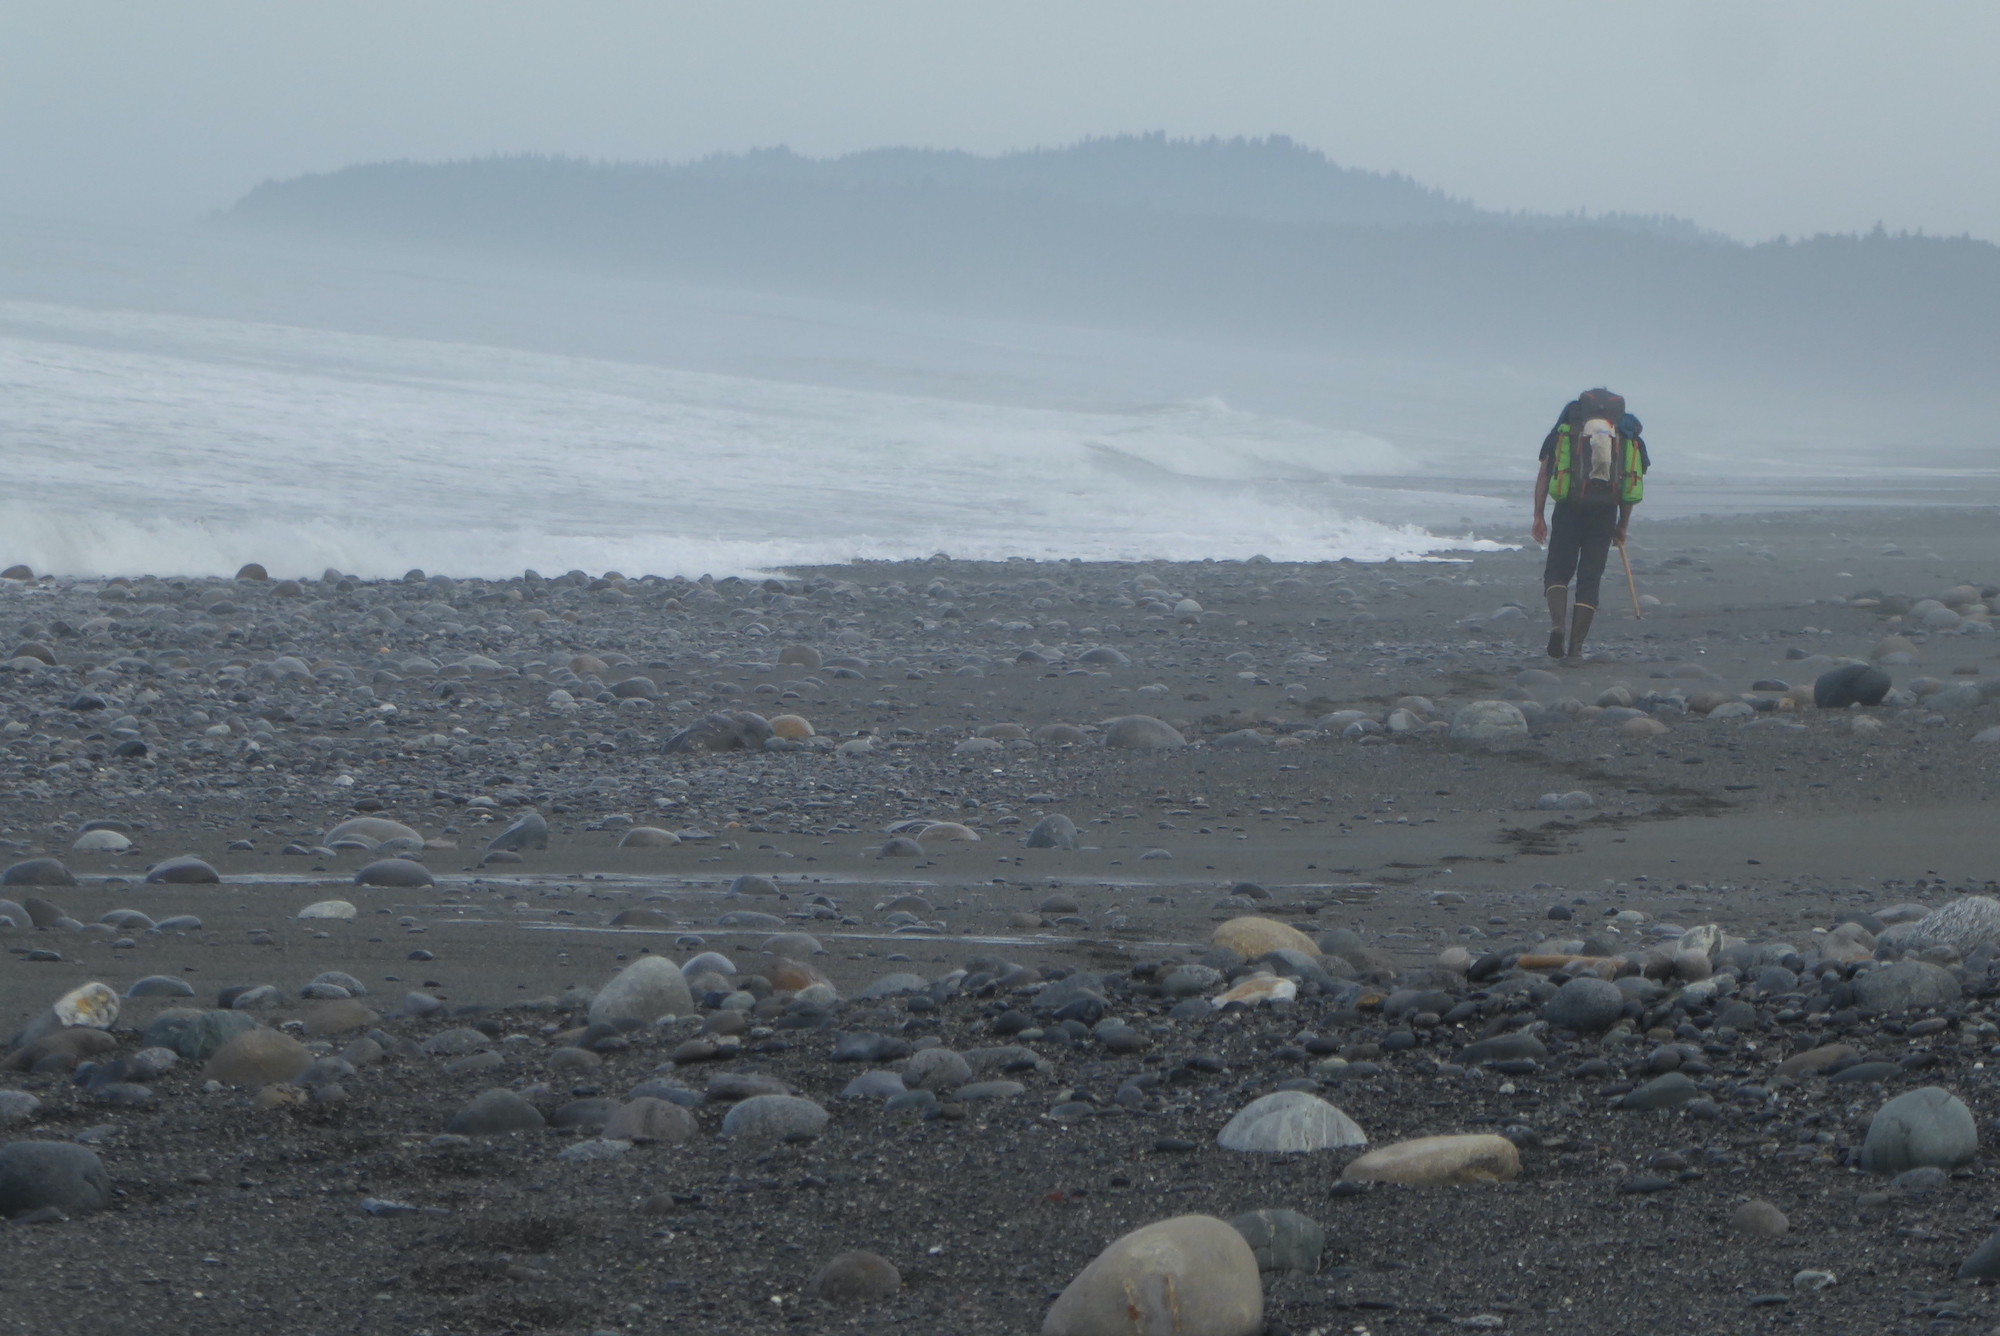 A man carries a backpack along a cobbled ocean beach.